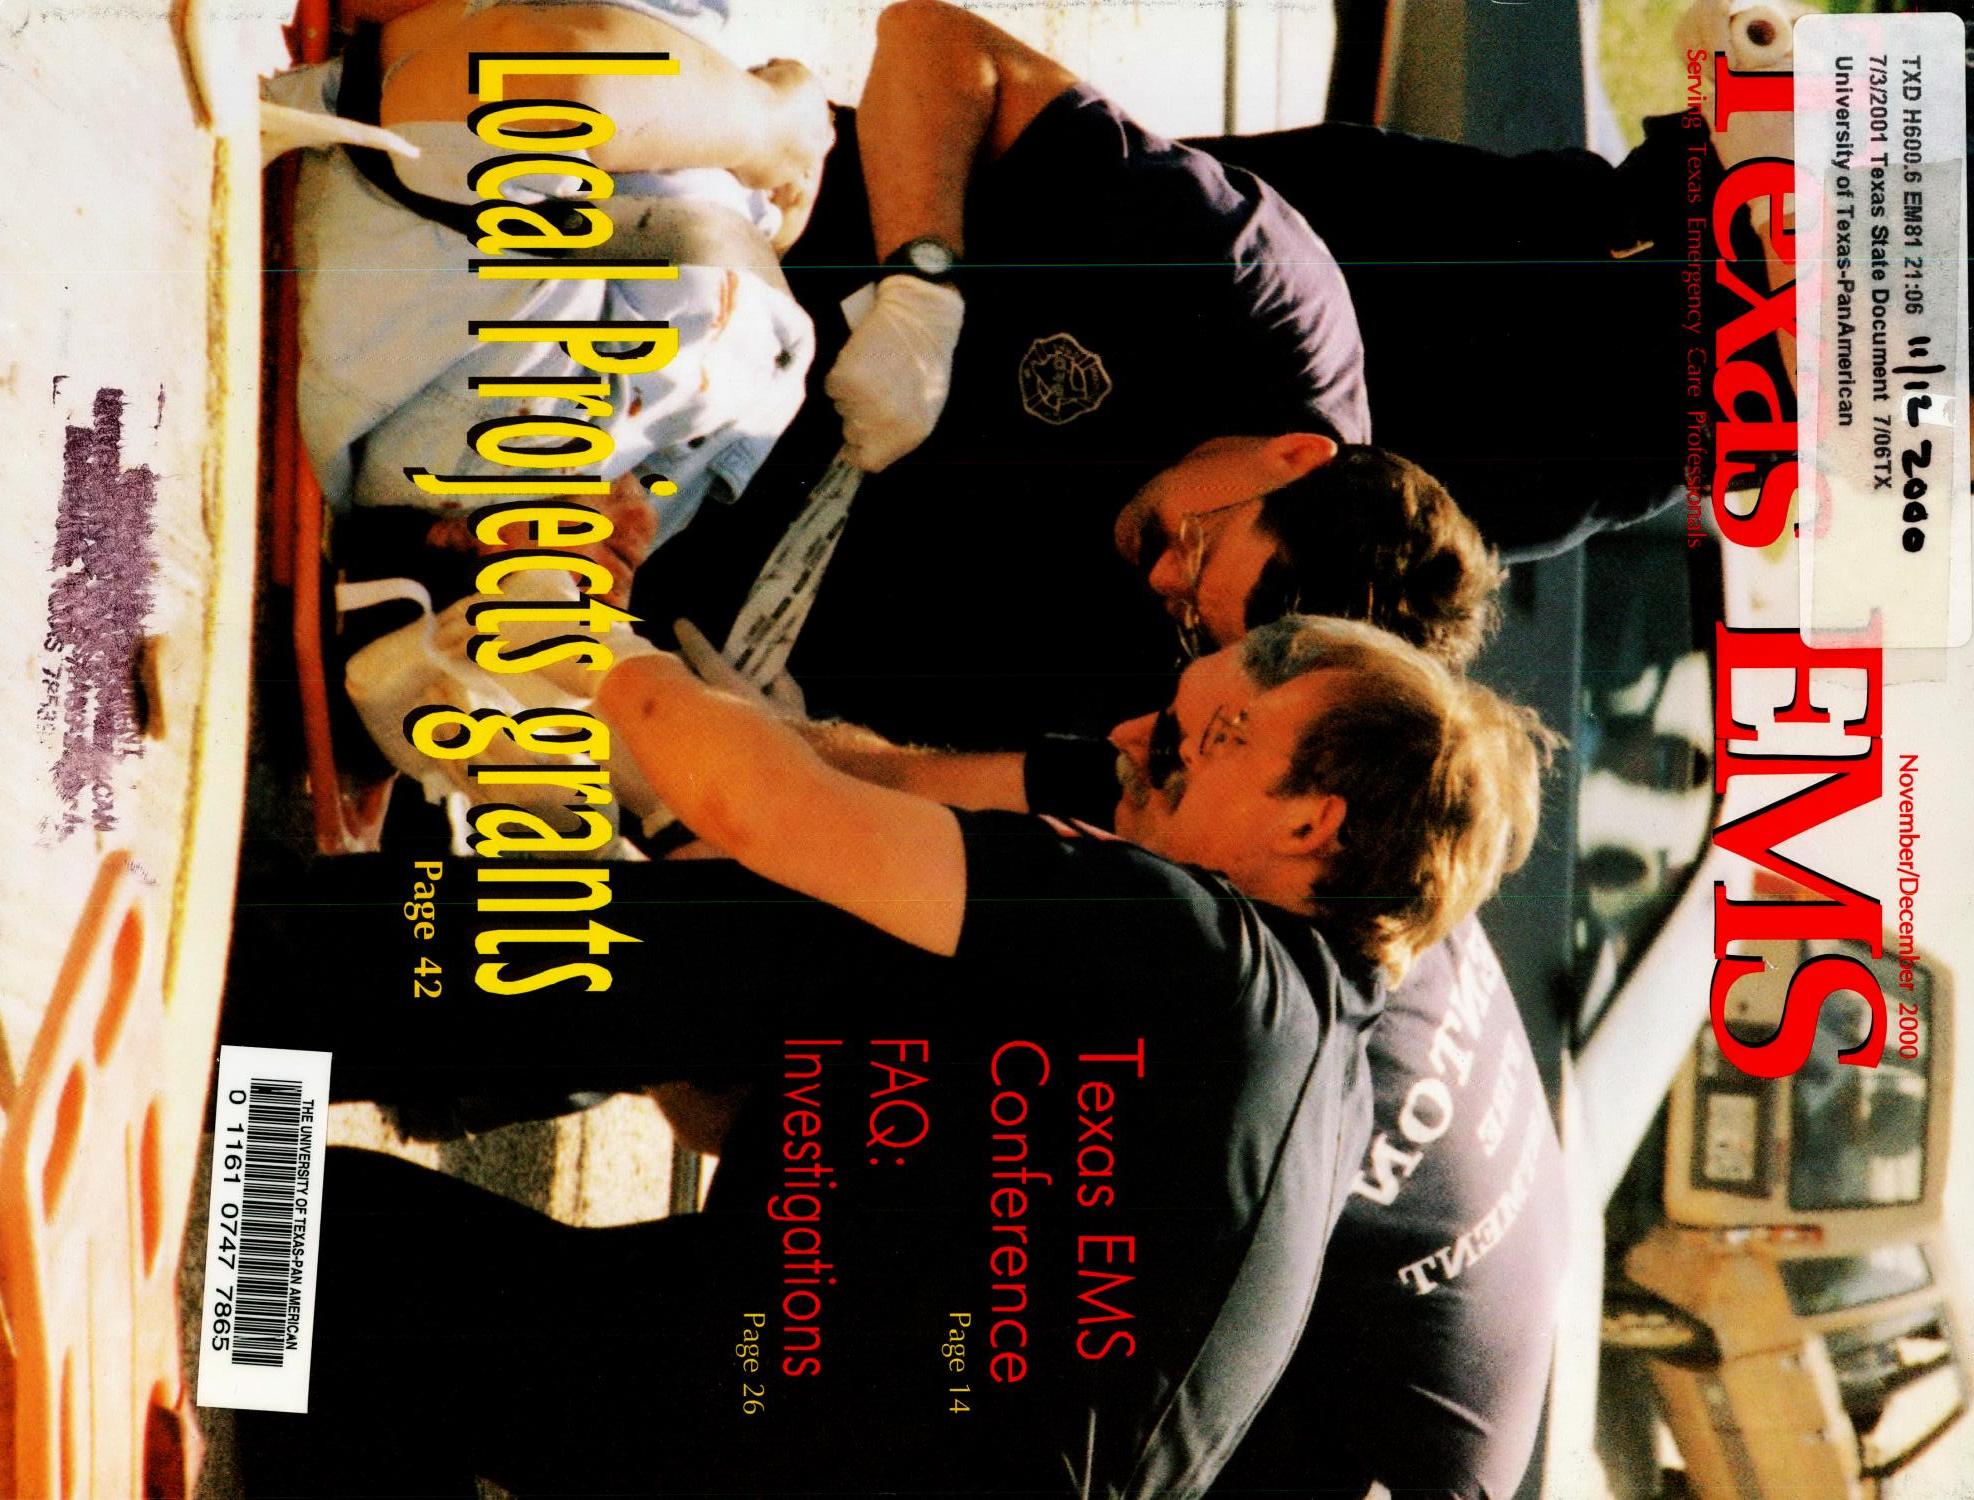 Texas EMS Magazine, Volume 21, Number 6, November/December 2000
                                                
                                                    1
                                                